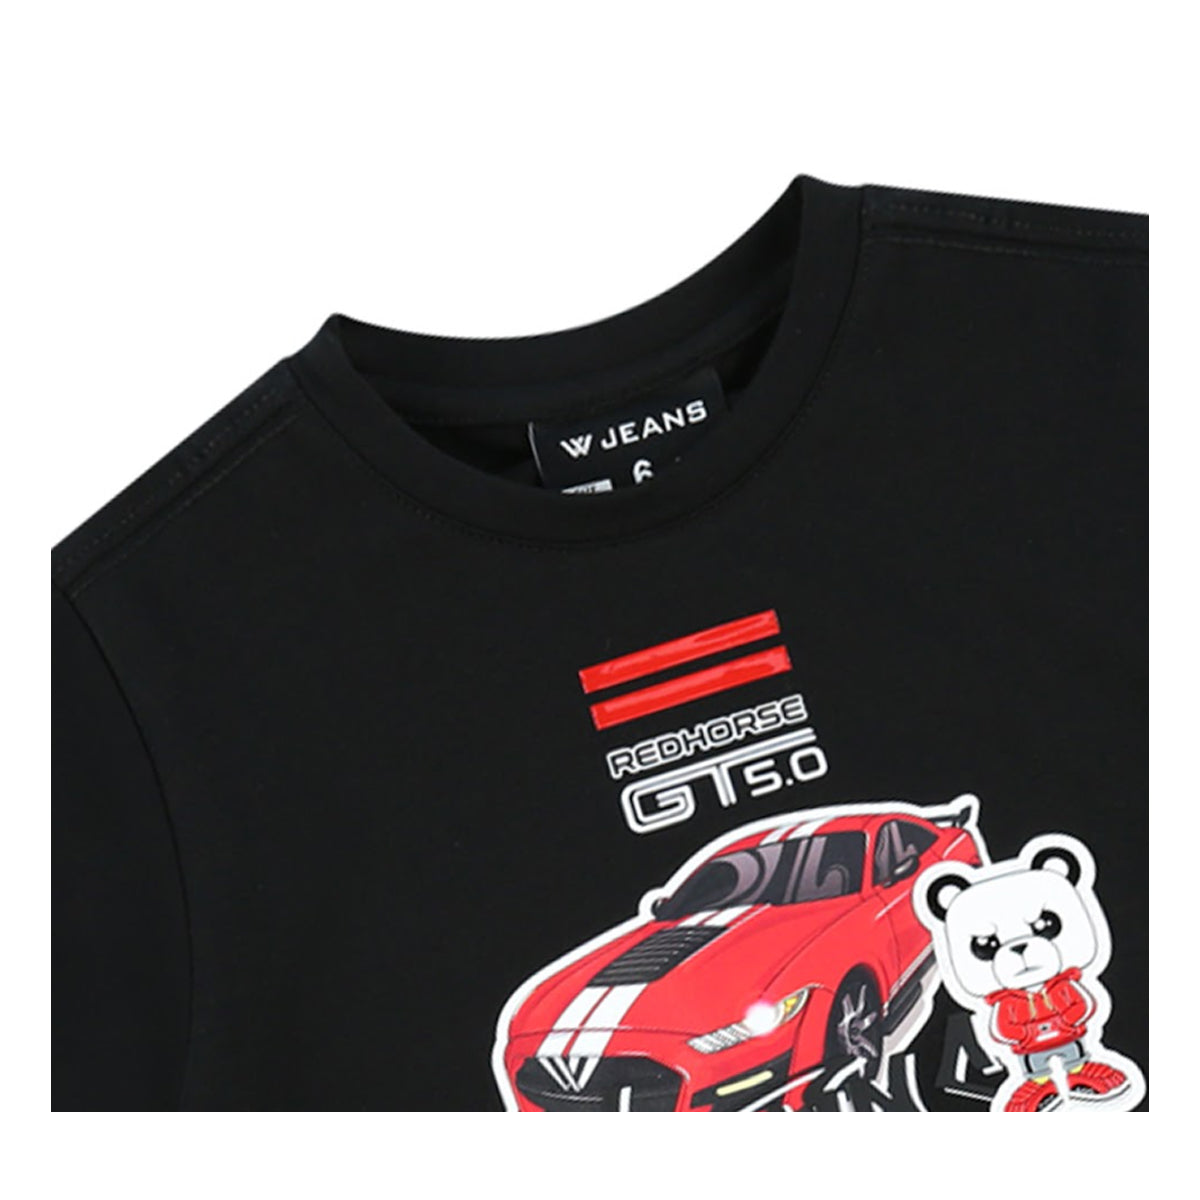 חולצת טי שרט W JEANS GT 5.0 לילדים